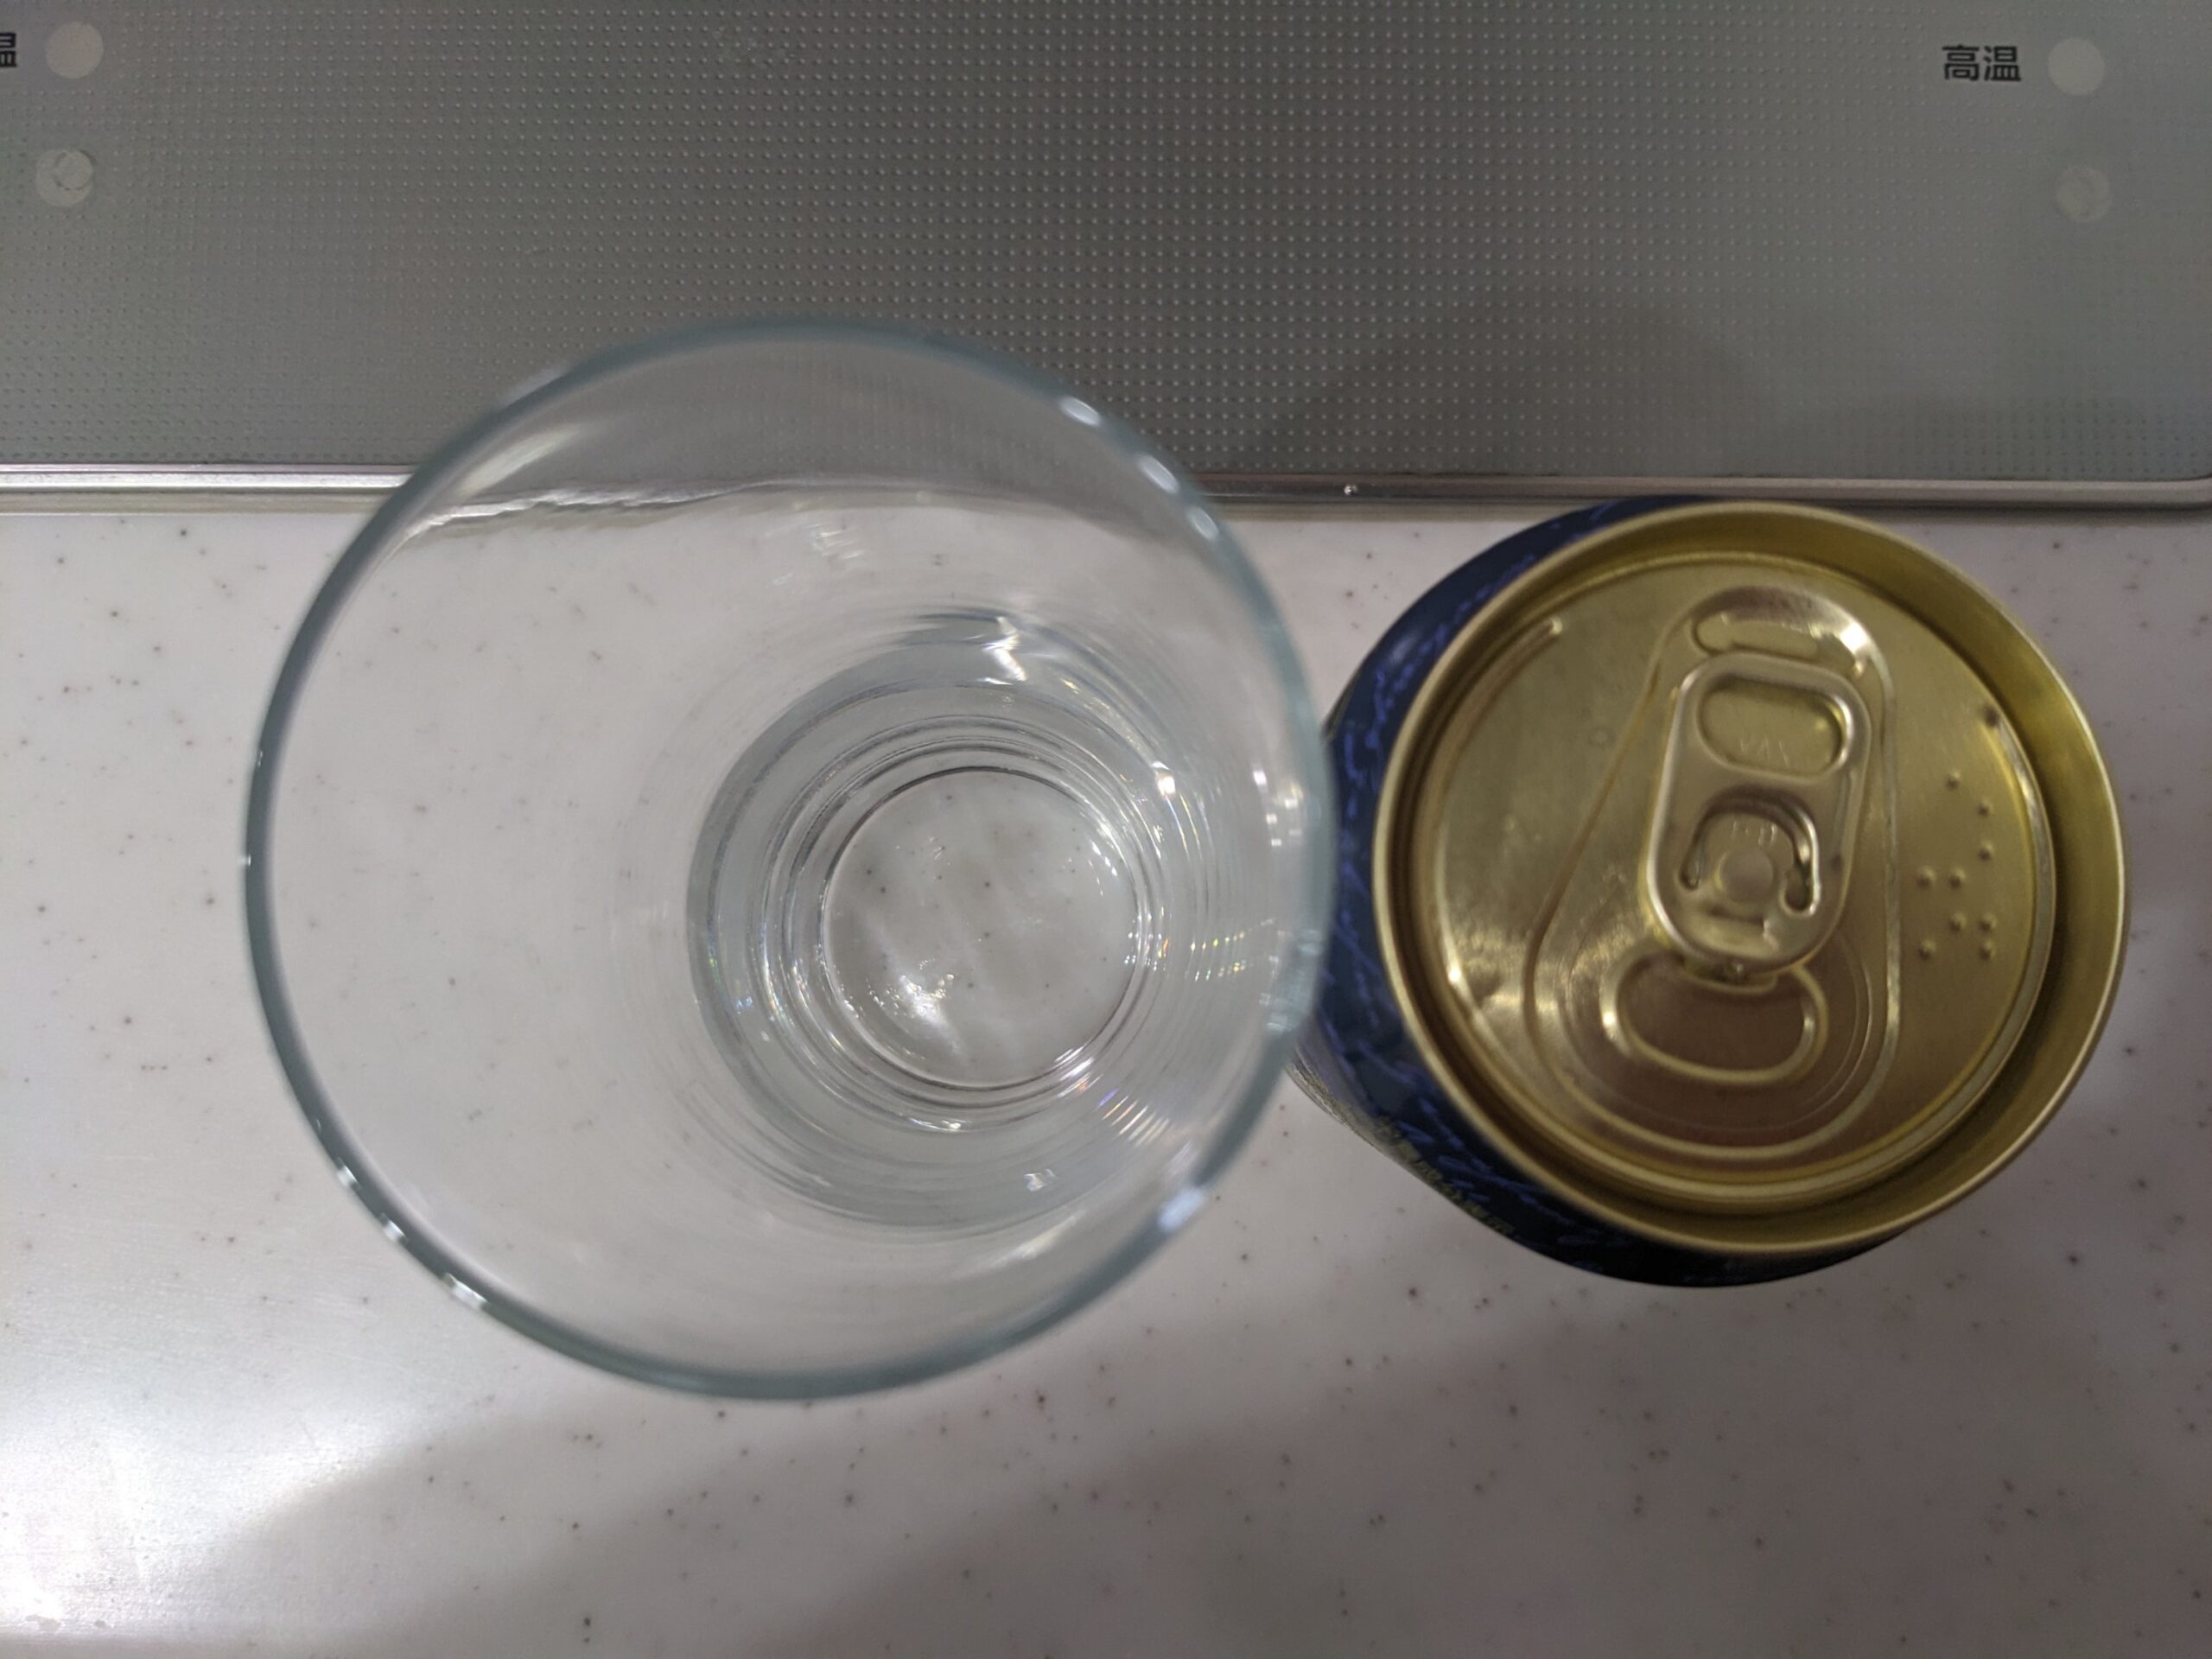 上から見たグラスと缶の「ヱビスニューオリジン」